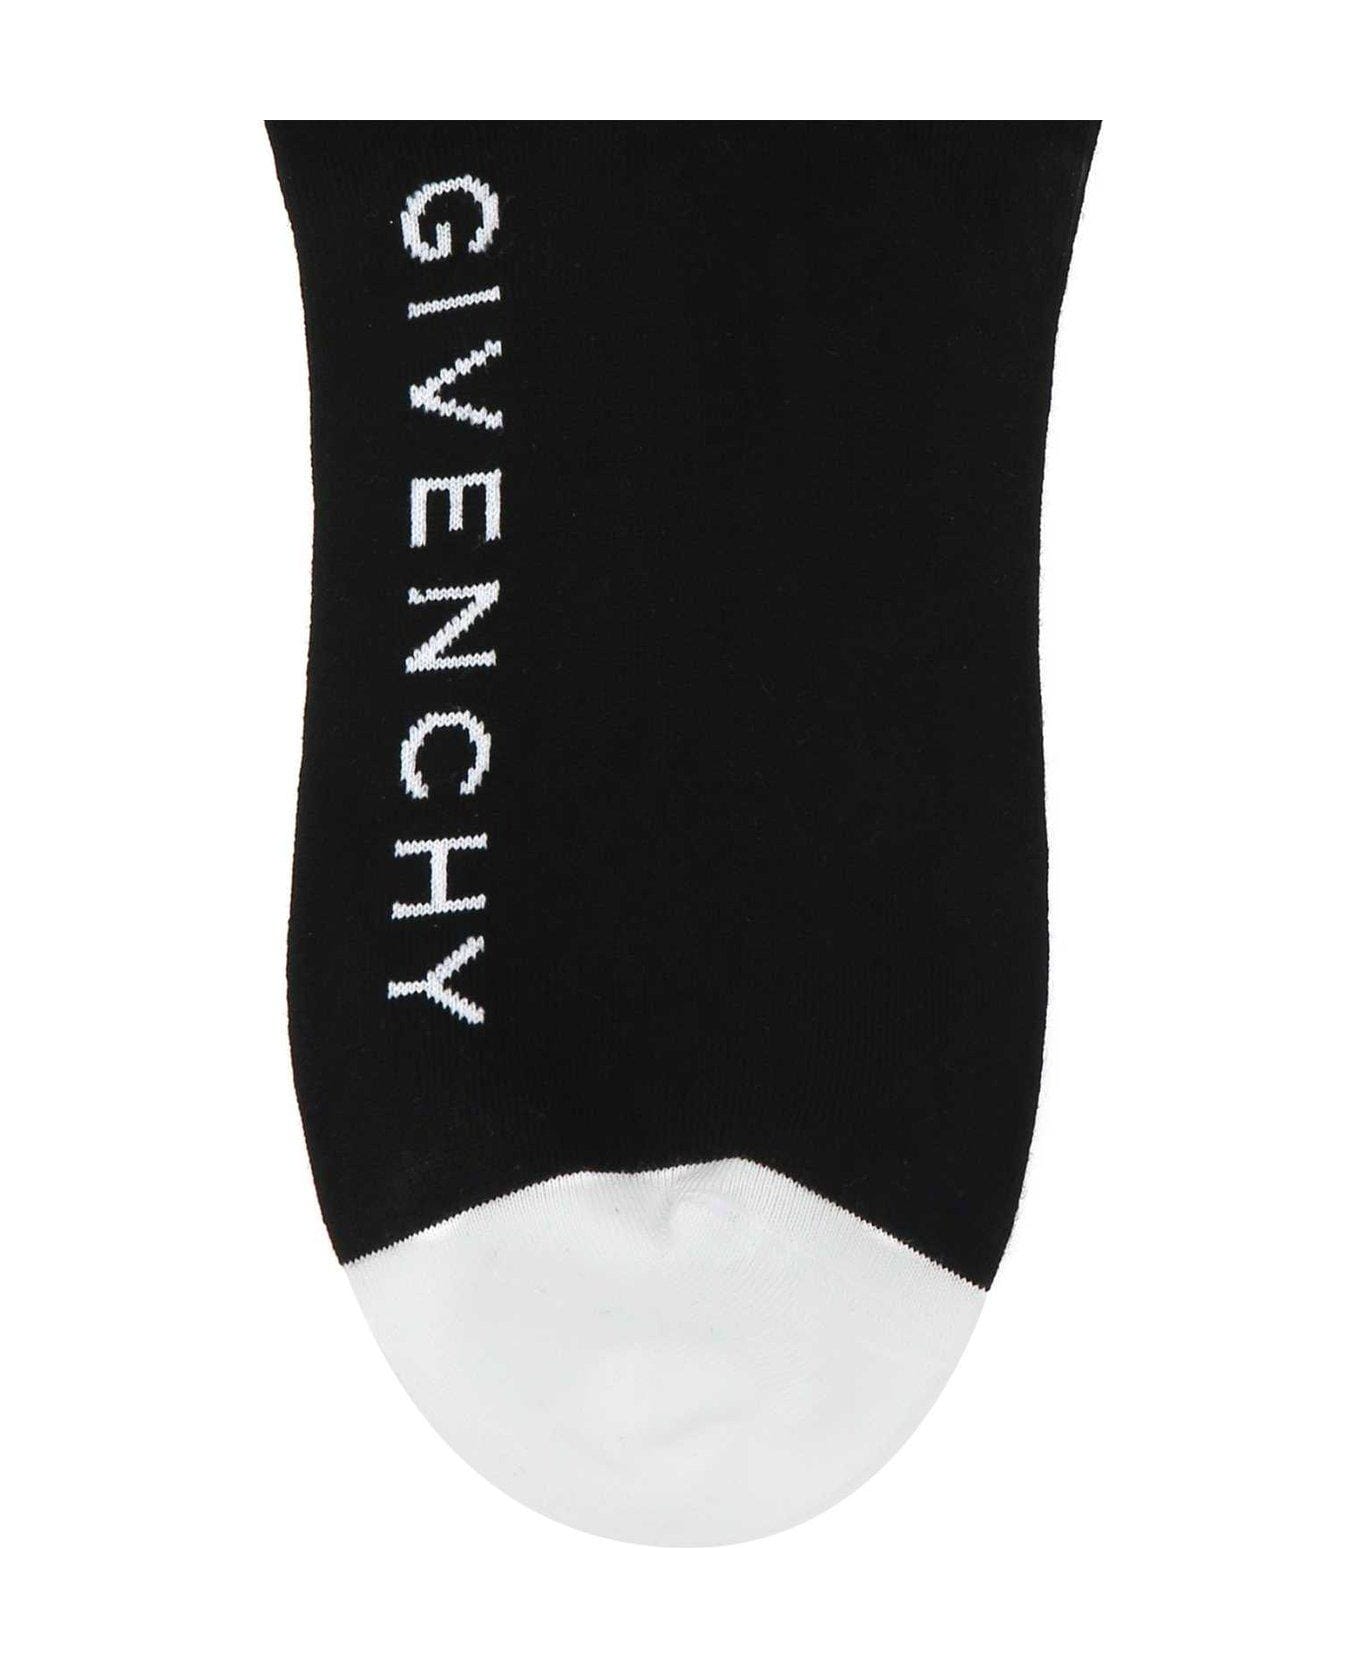 Givenchy Logo Intarsia Crew Socks